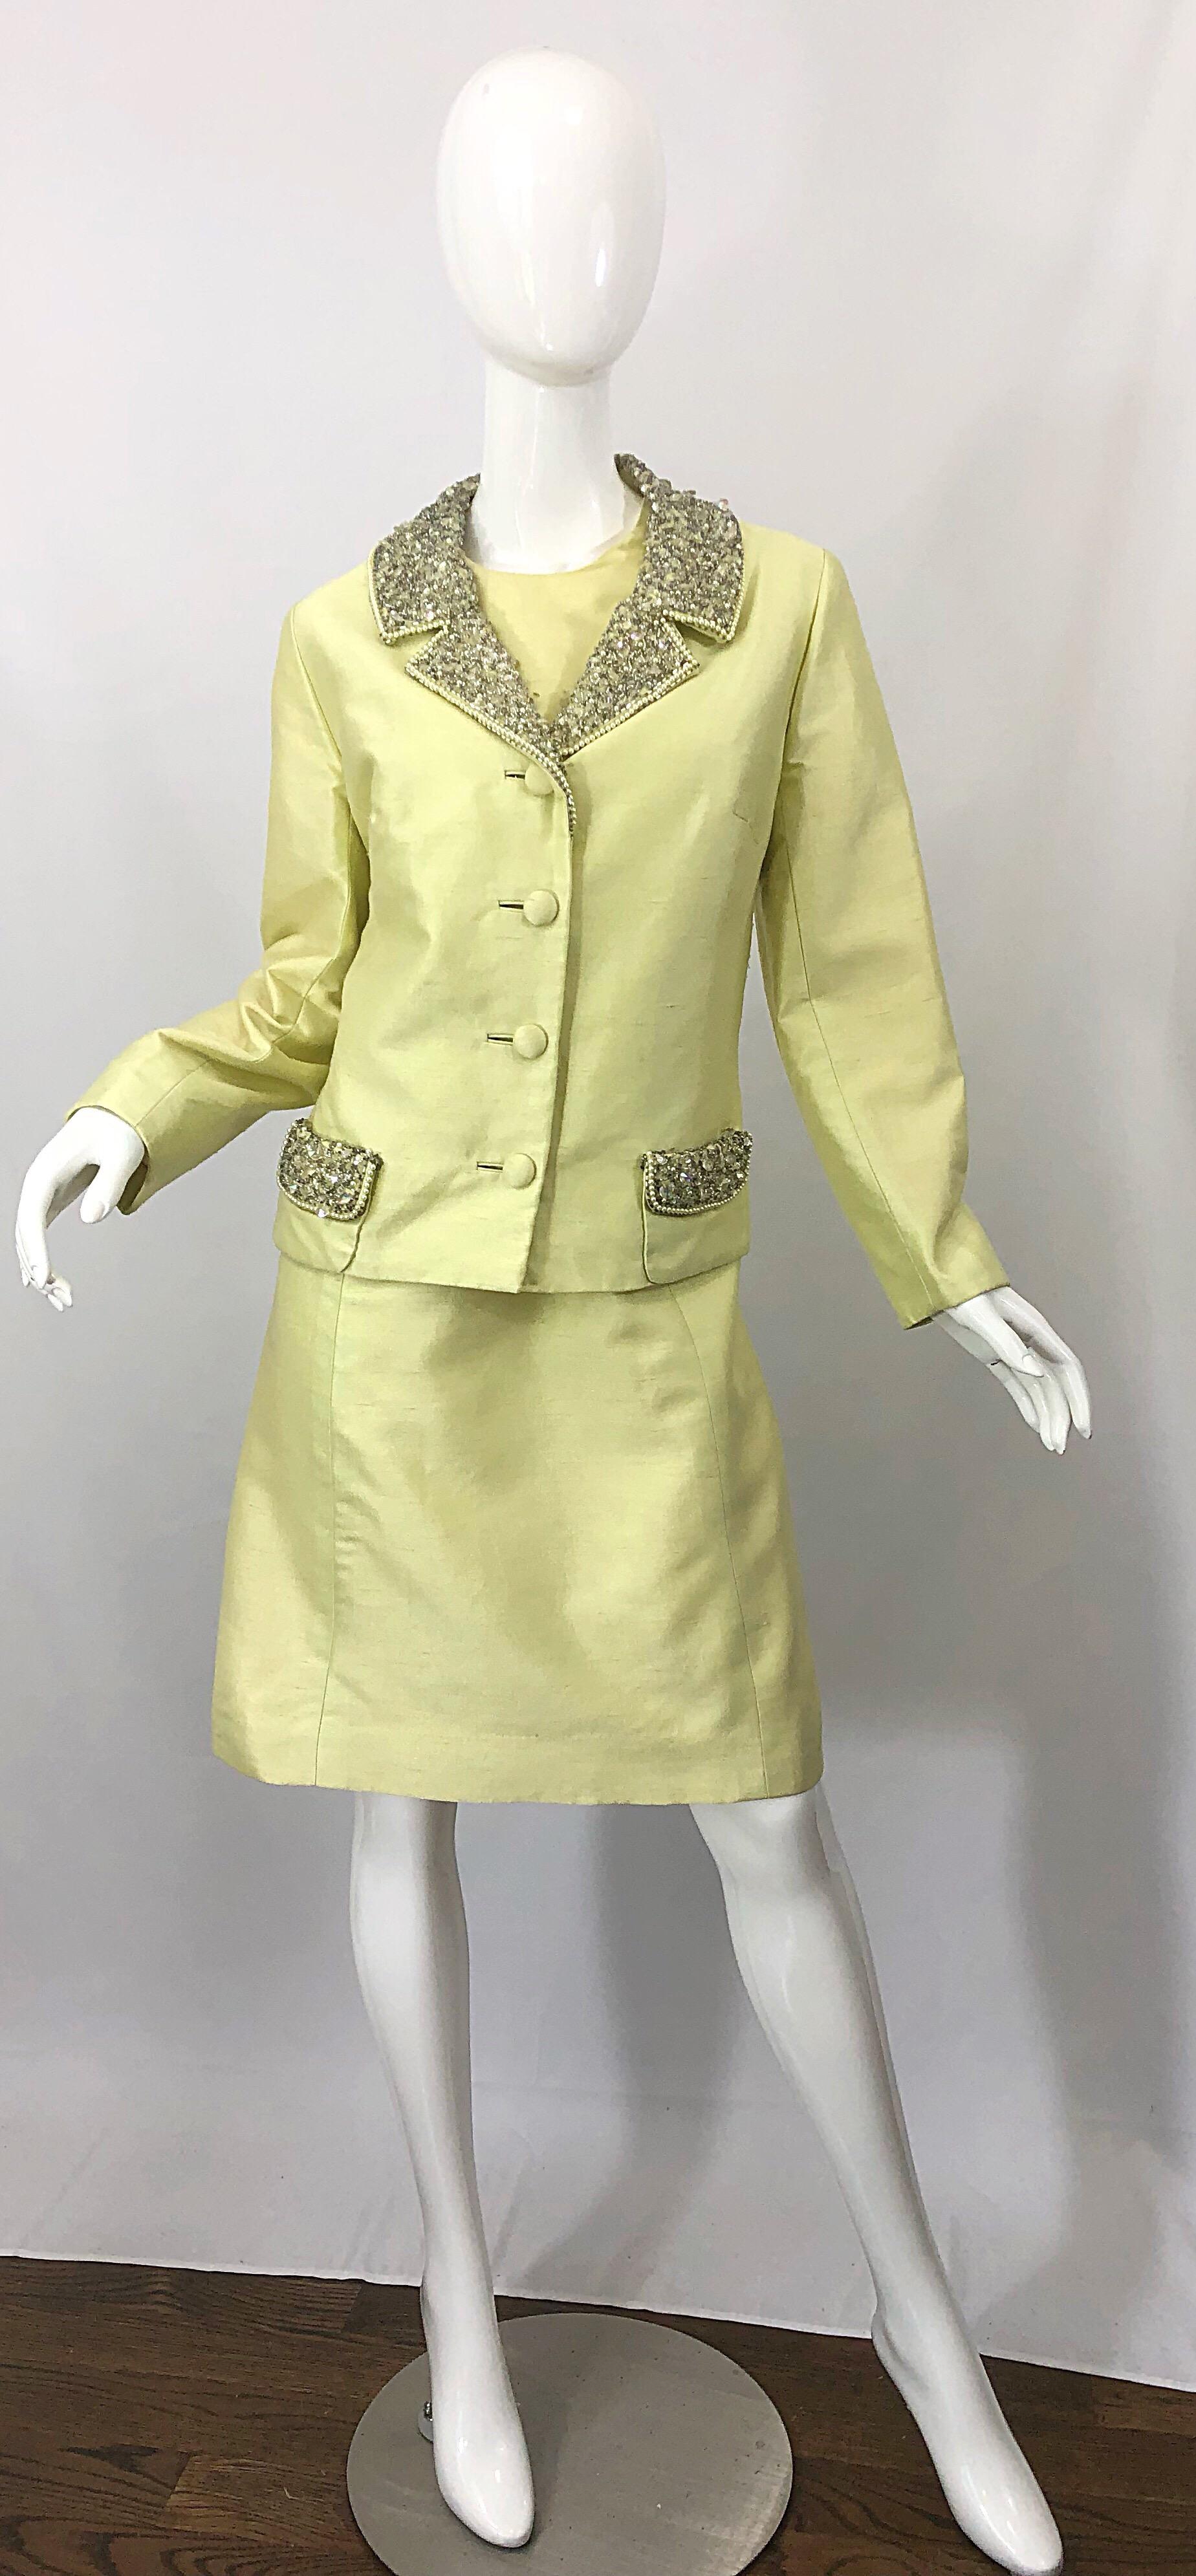 Ensemble robe et veste A-Line en shantung de soie jaune JACK BRYAN des années 1960 ! La robe est dotée d'un corsage ajusté et d'une jupe indulgente de forme A-Line. Fermeture à glissière entièrement métallique dans le dos avec fermeture à crochet.